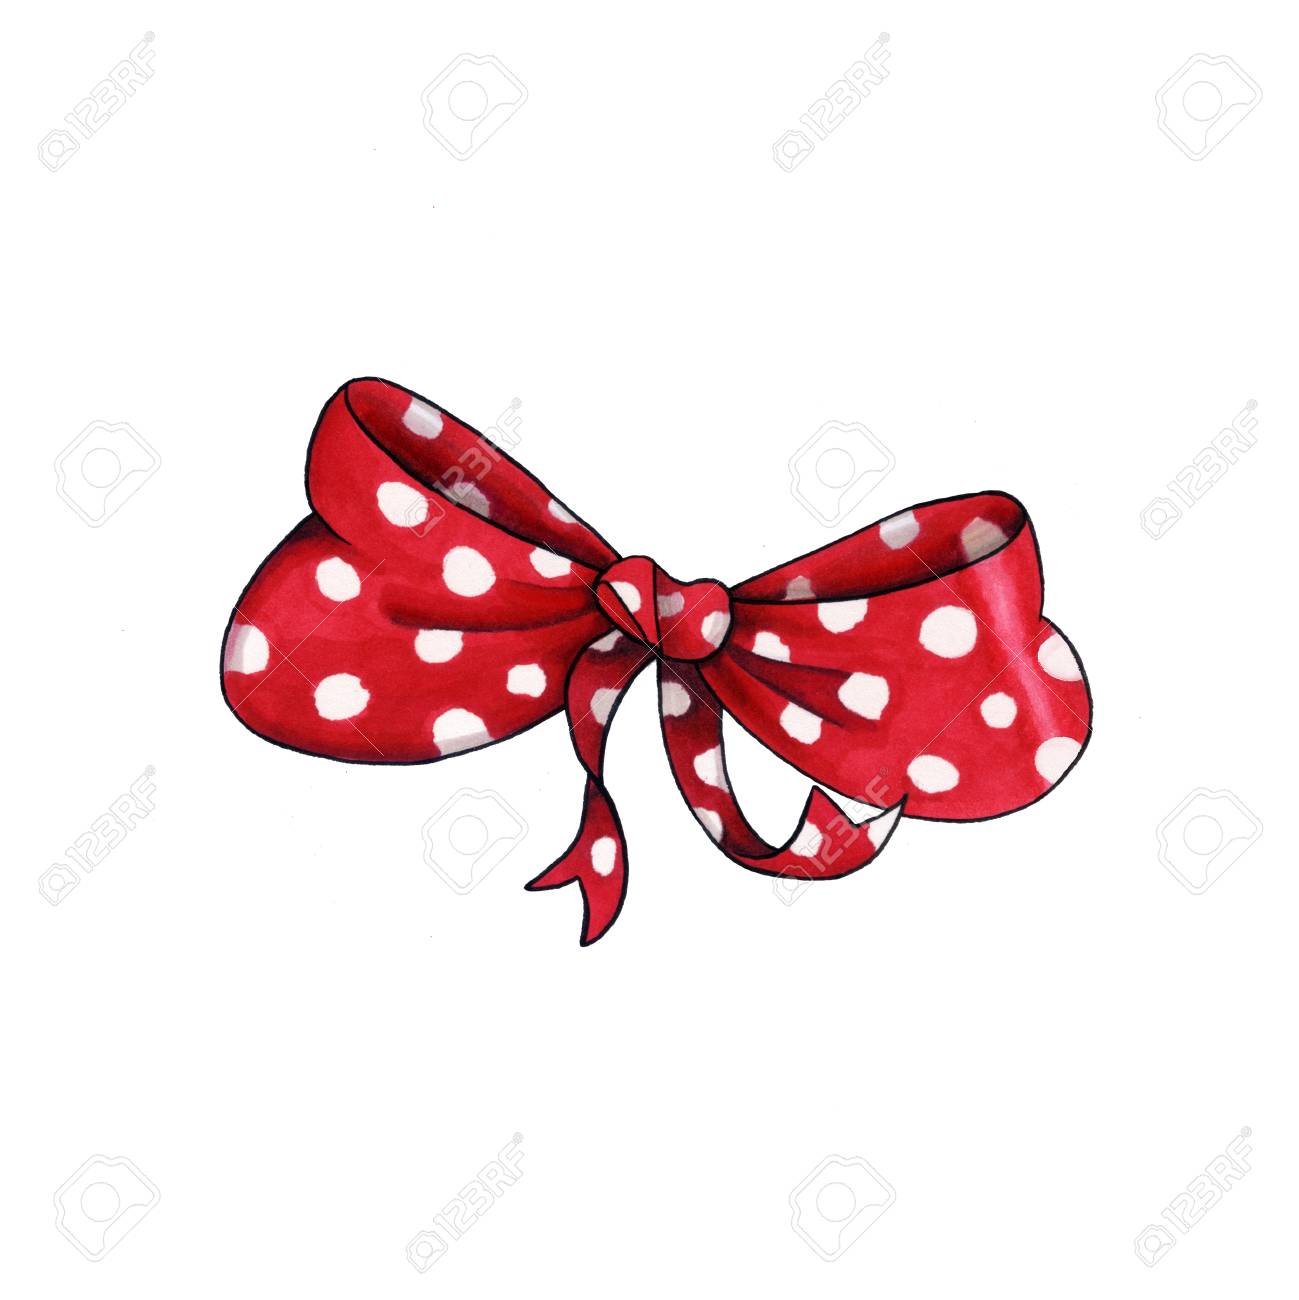 Ribbon knot handdrawn raster illustration realistic red polka dots gift bow drawing bowknot clipart cartoon bow